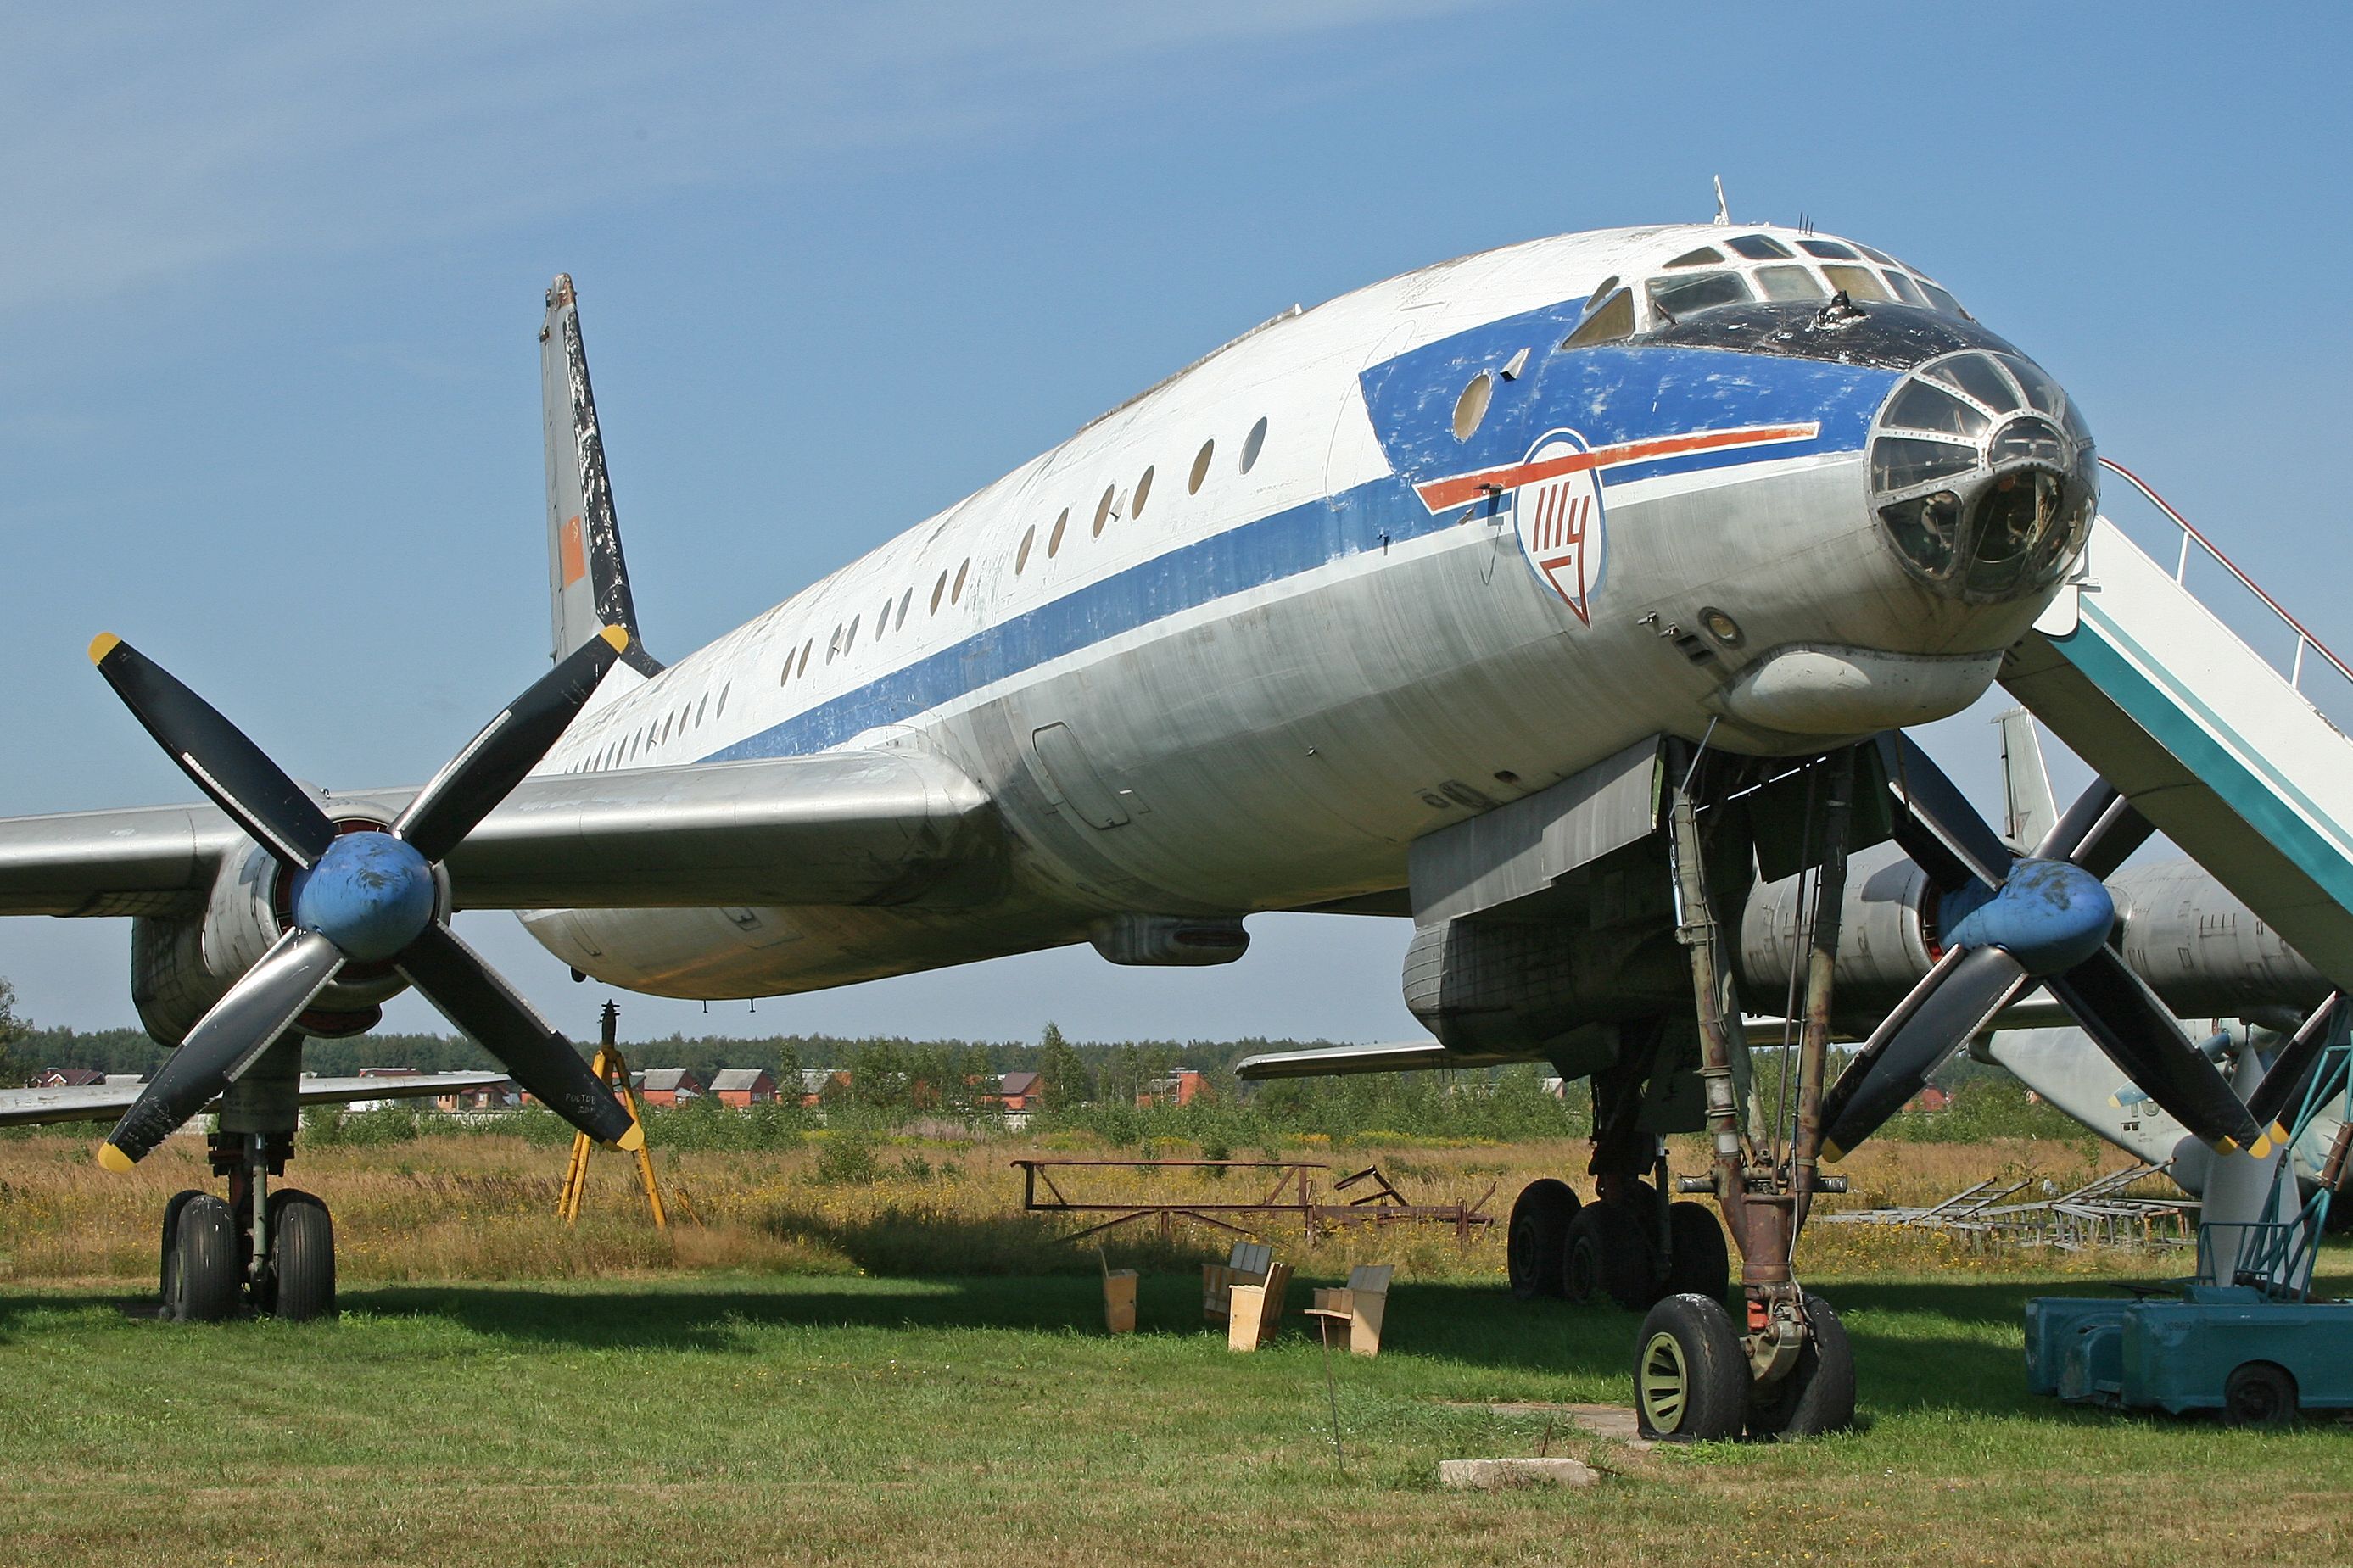 An old Aeroflot Tupolev Tu-114 on display.